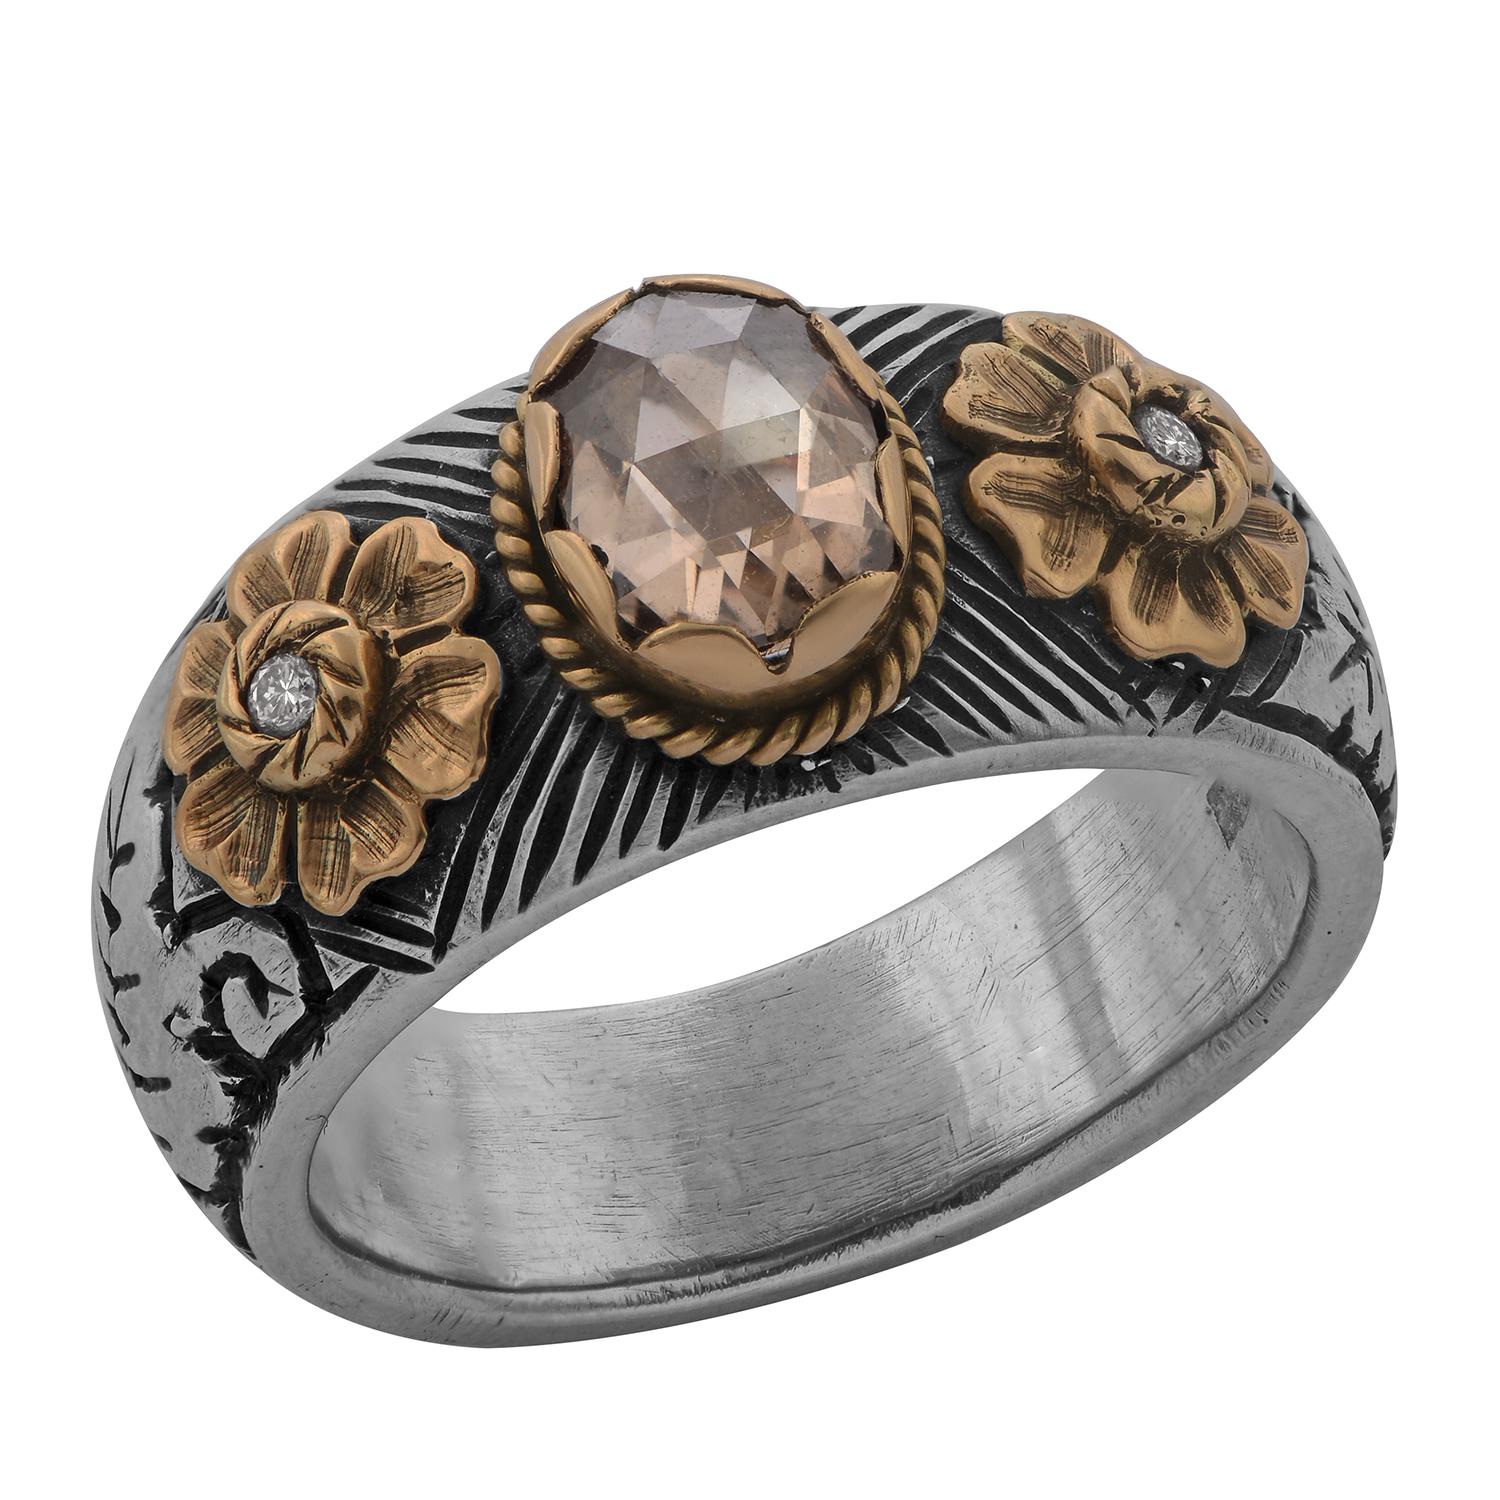 Dies ist ein exquisiter, einzigartiger Diamantring. Sie wird in unseren Werkstätten handgefertigt und zeichnet sich durch eine wunderschöne Mughal-Art-Gravur aus. Dies ist eine hochspezialisierte Technik der Handgravur. Dieser Ring zeigt Blatt- und